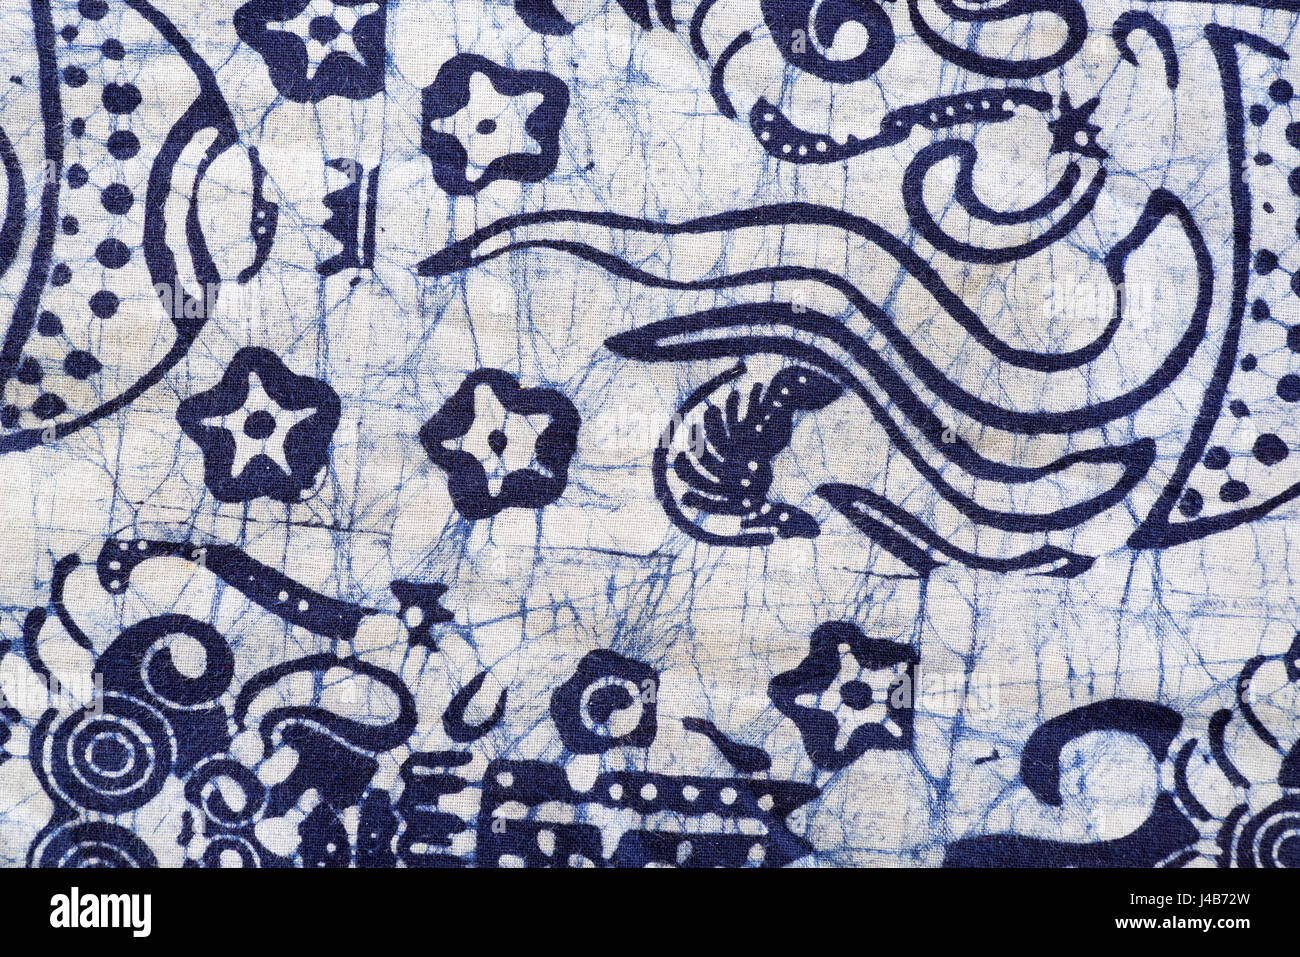 Dettaglio delle tinte blu panno batik Foto Stock